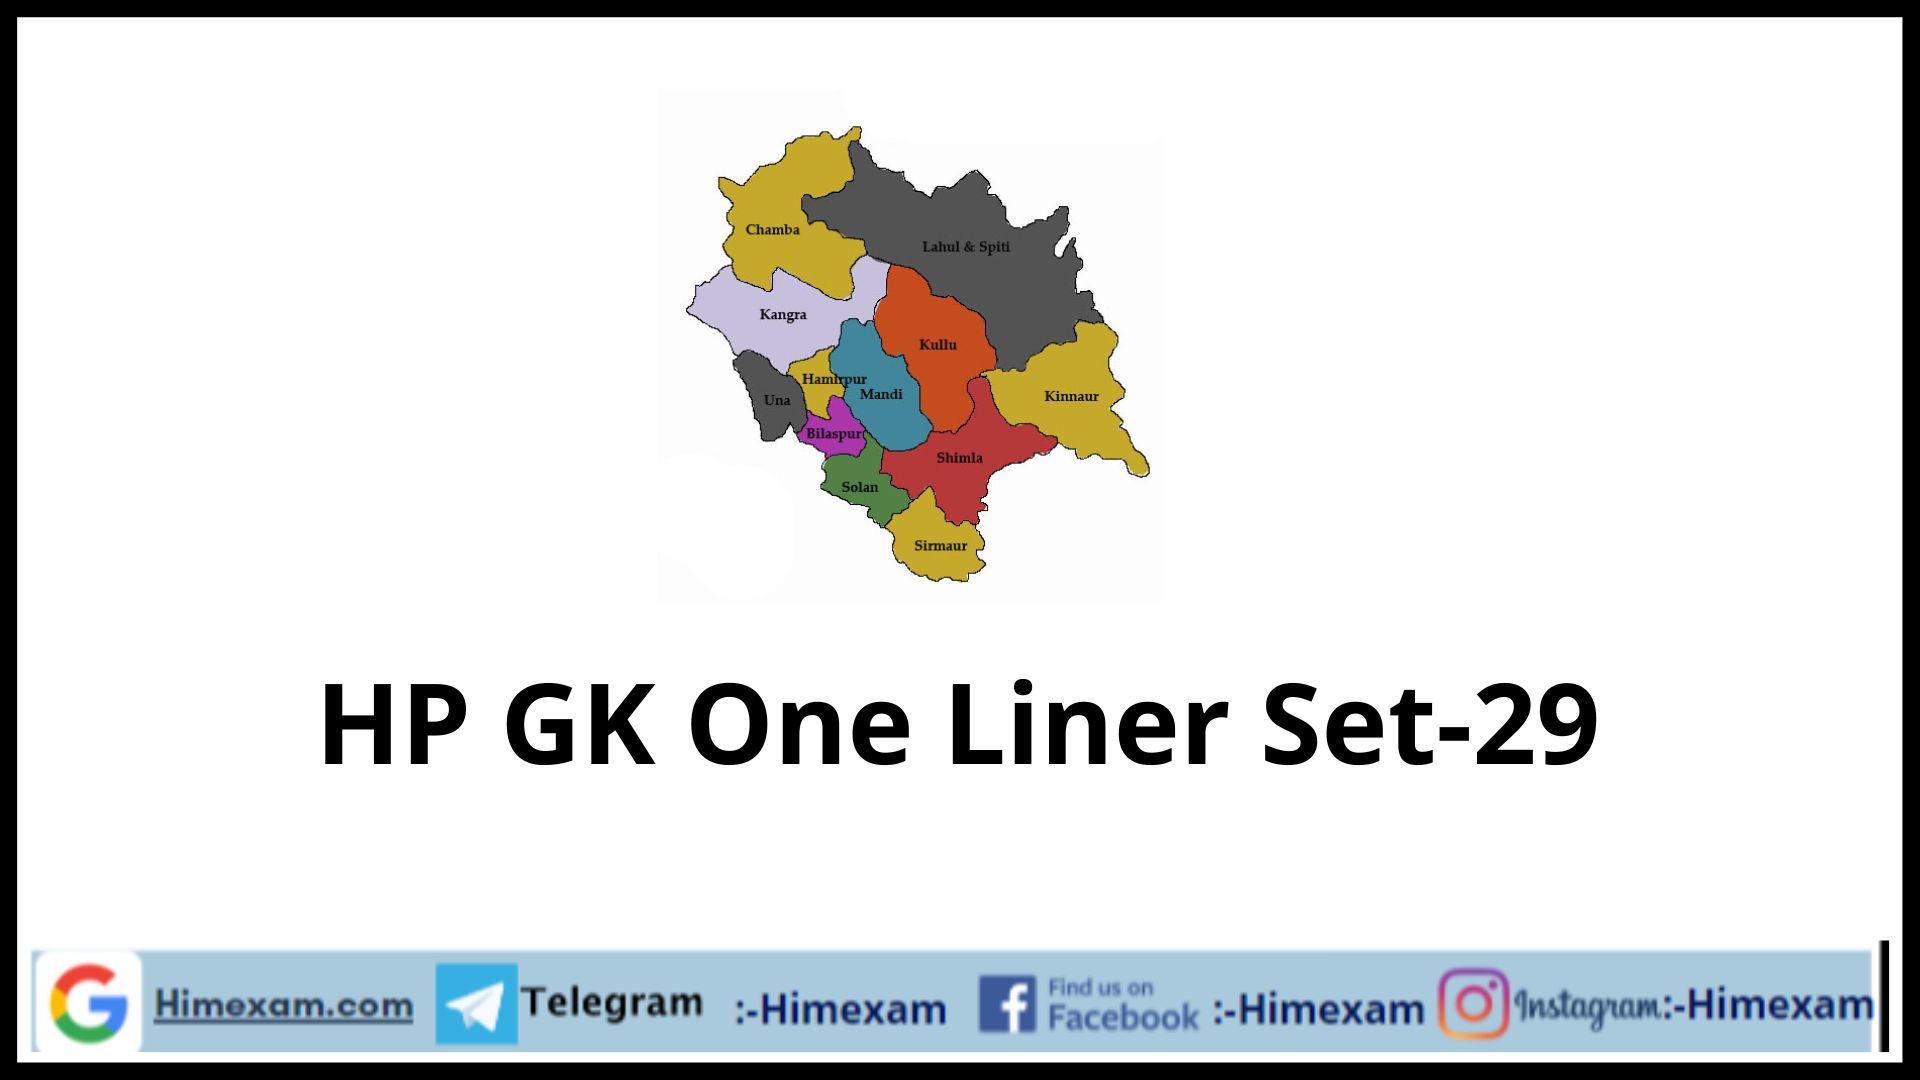 HP GK One Liner Set-29